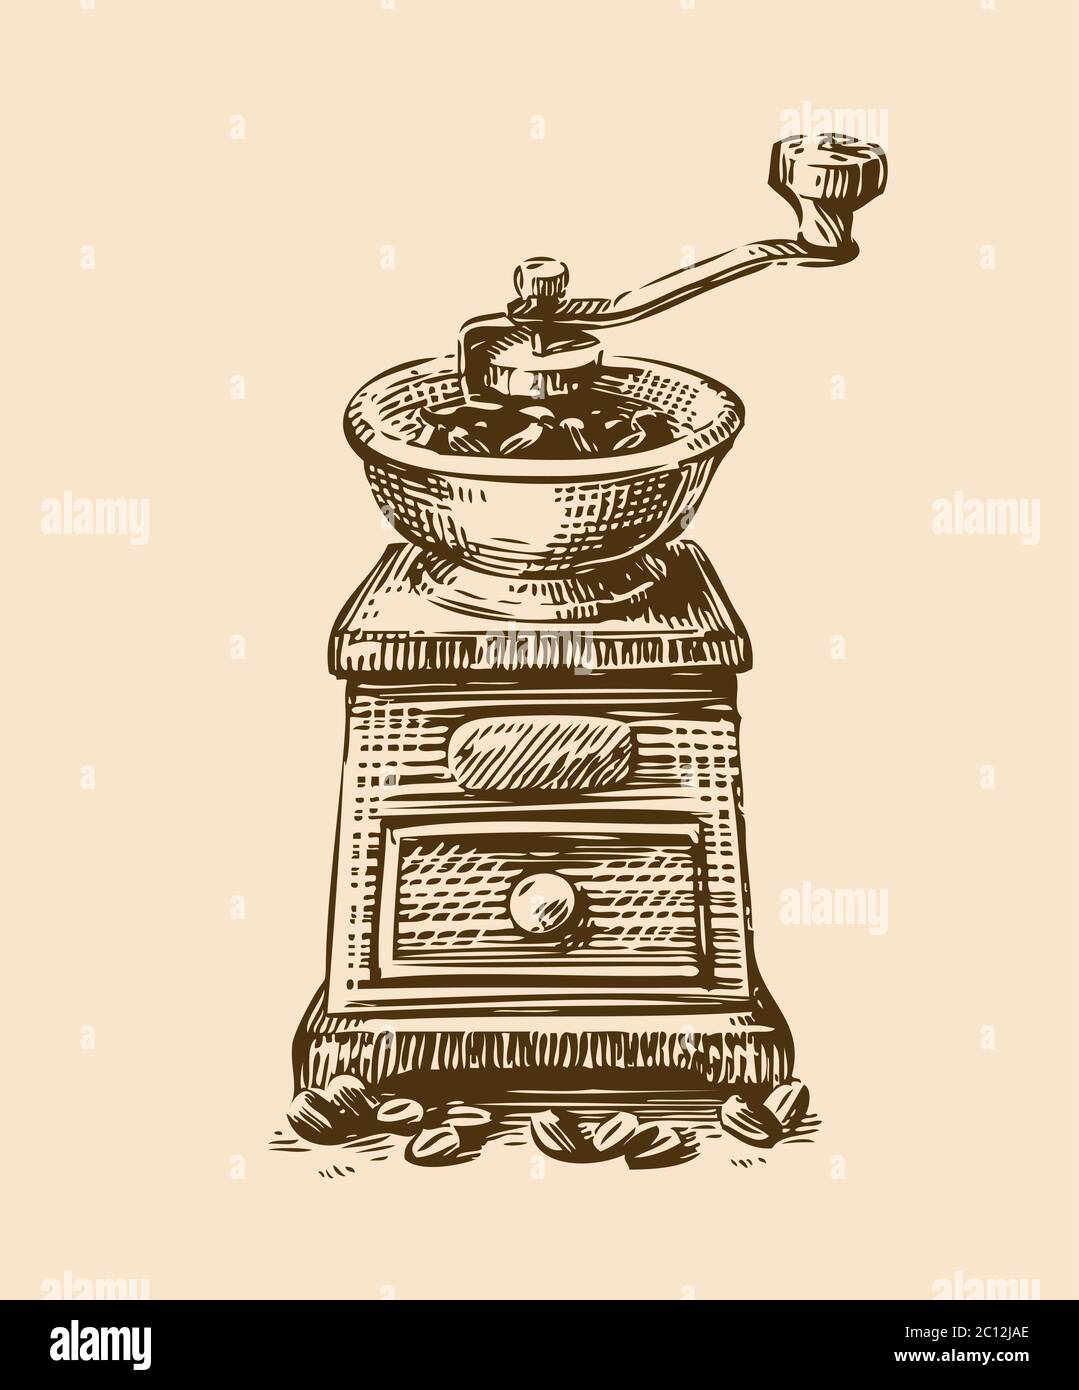 Coffee grinder sketch. Vintage vector illustration. Menu design for restaurant and cafe Stock Vector